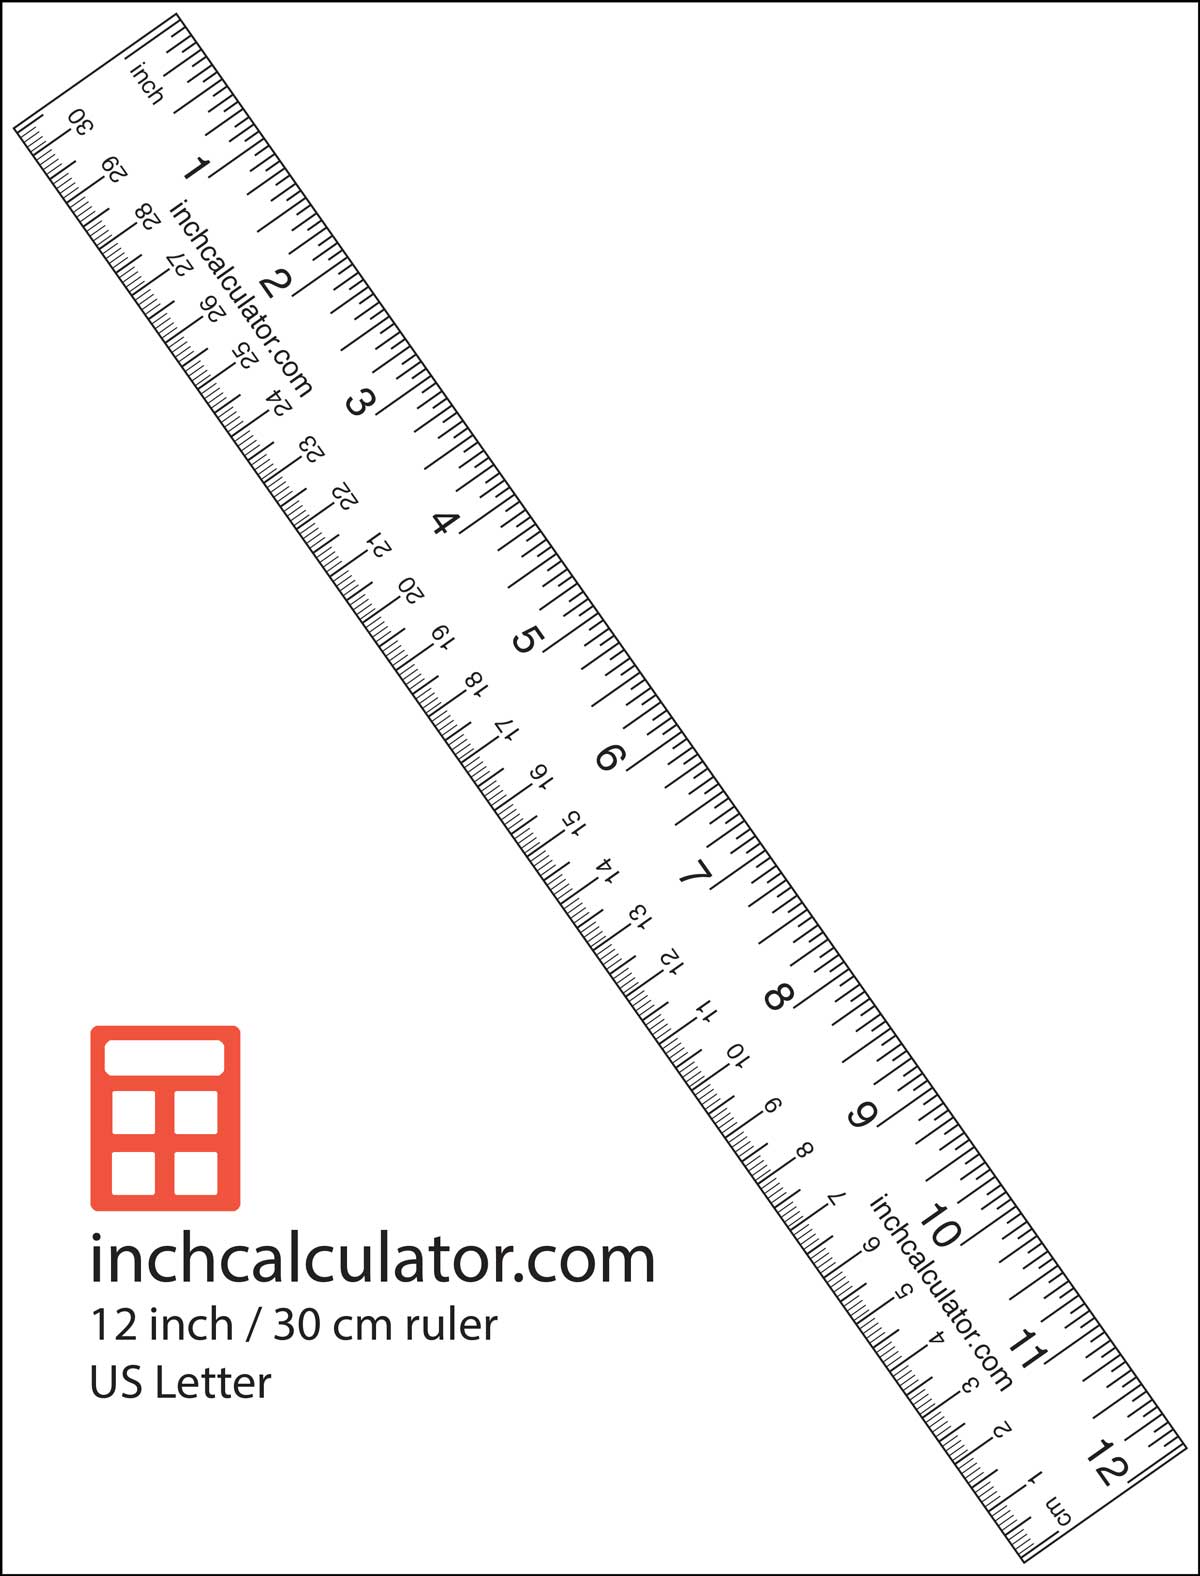 Wydrukuj miarkę papieru, aby wykonać pomiary, gdy nie masz miarki lub linijki't have a tape measure or ruler